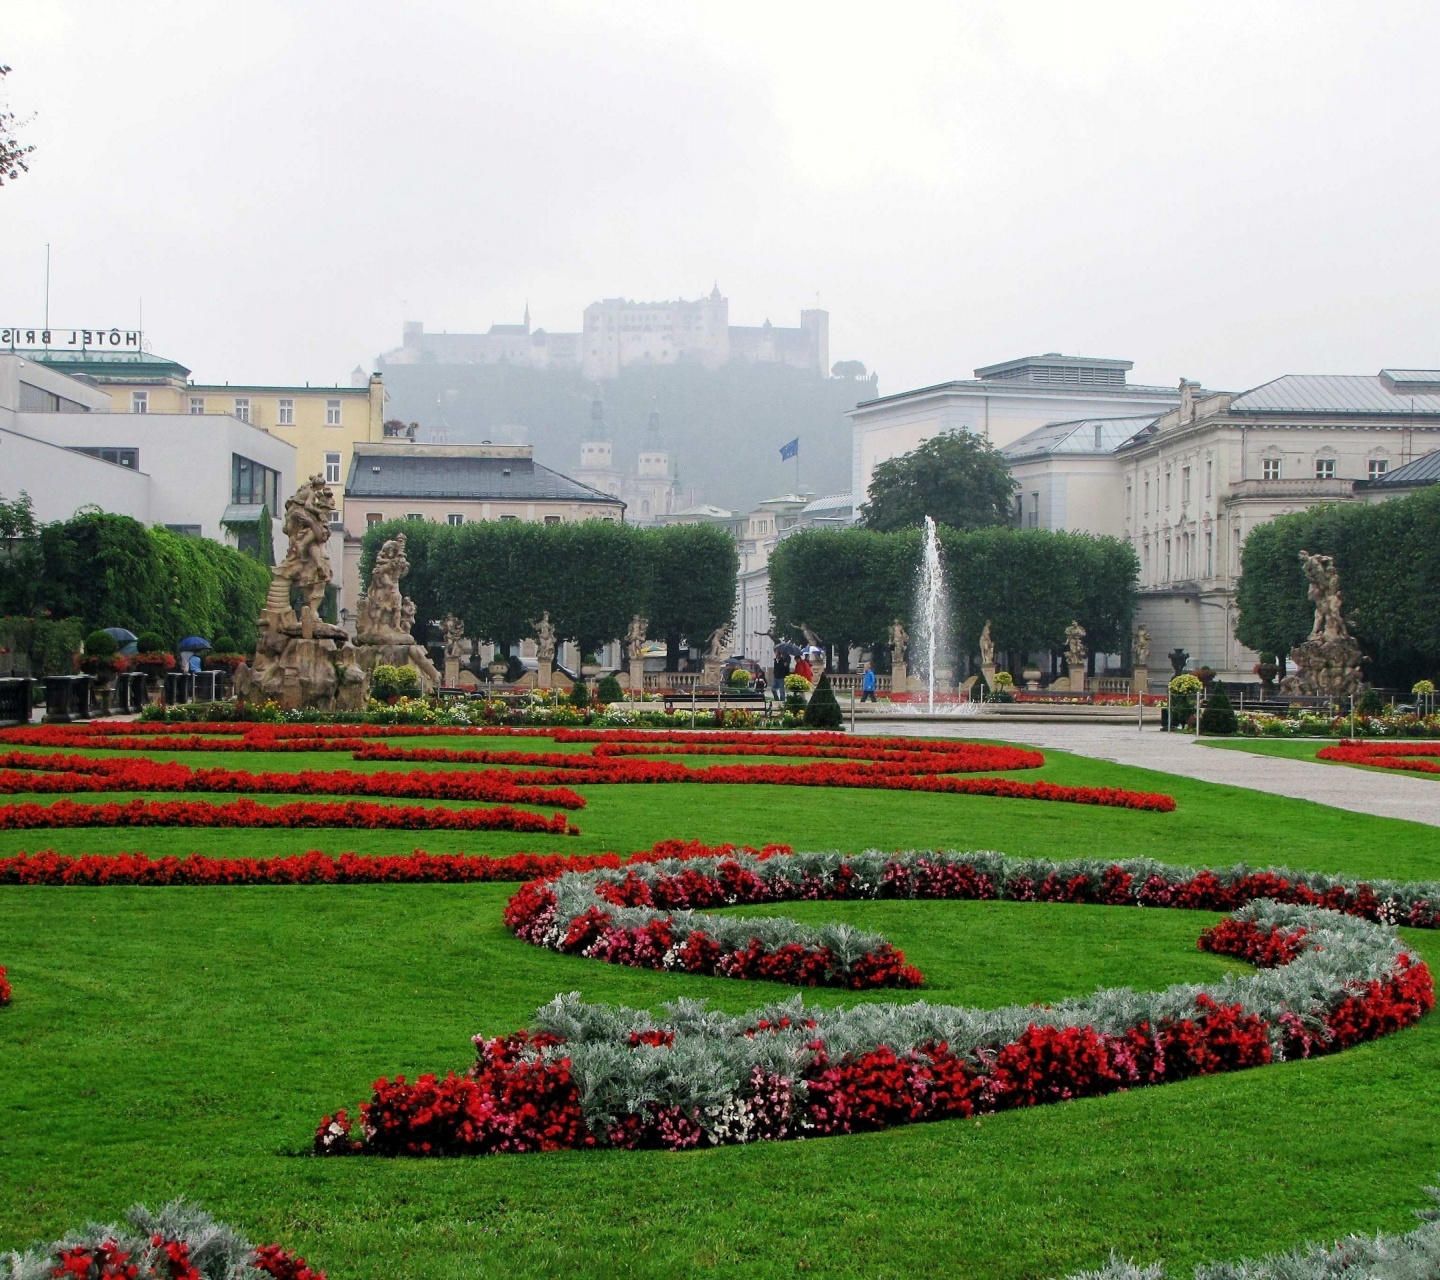 Mirabellgarden Under Rain Salzburg Austria